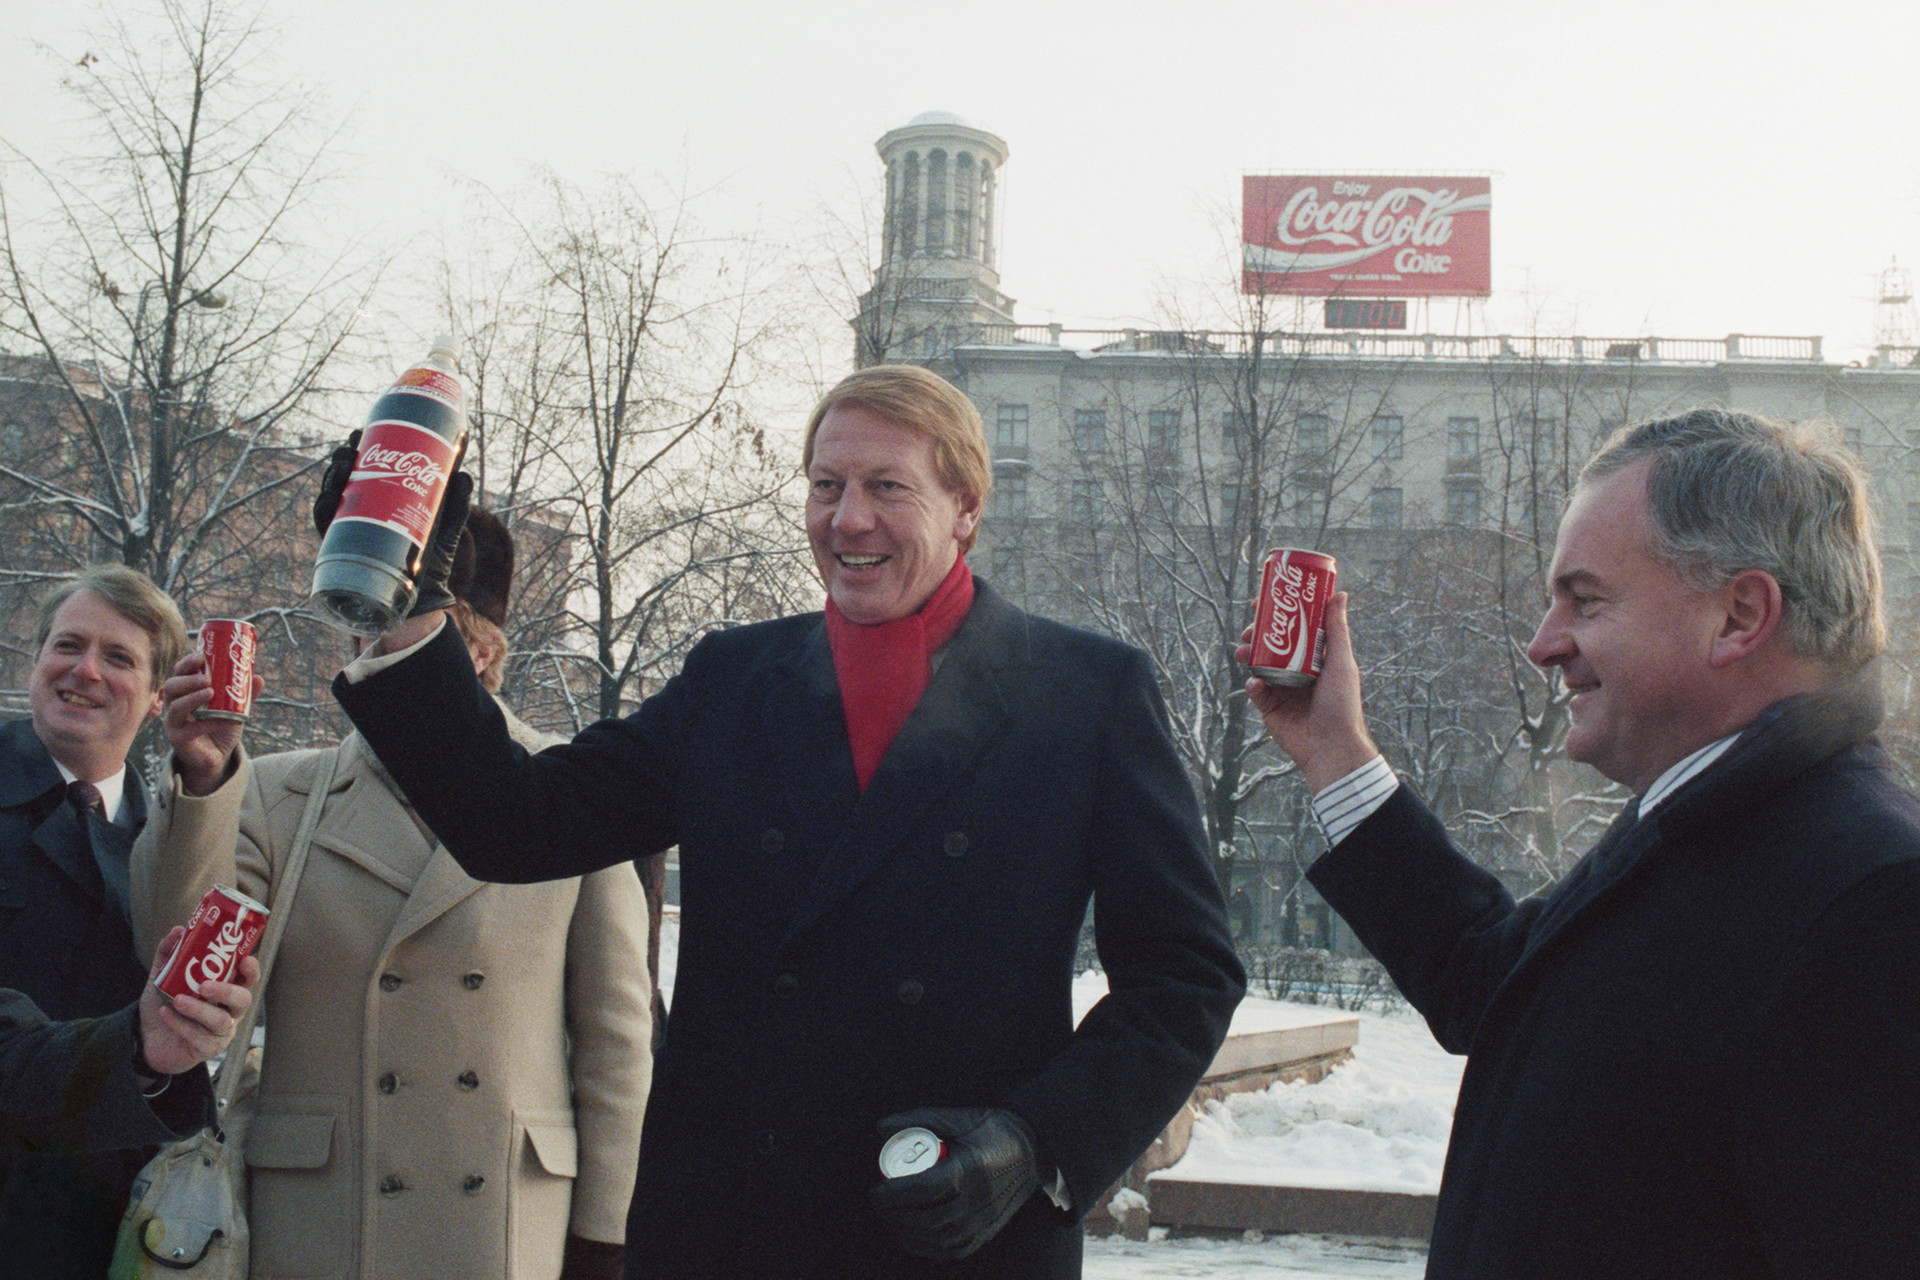 1989年12月1日。コカ・コーラの副社長、ネヴィリ・イスデル。コカ・コーラの製品のプレゼンテーションの時。後にはプーシキン広場にあったコカ・コーラの広告バナーが見える。